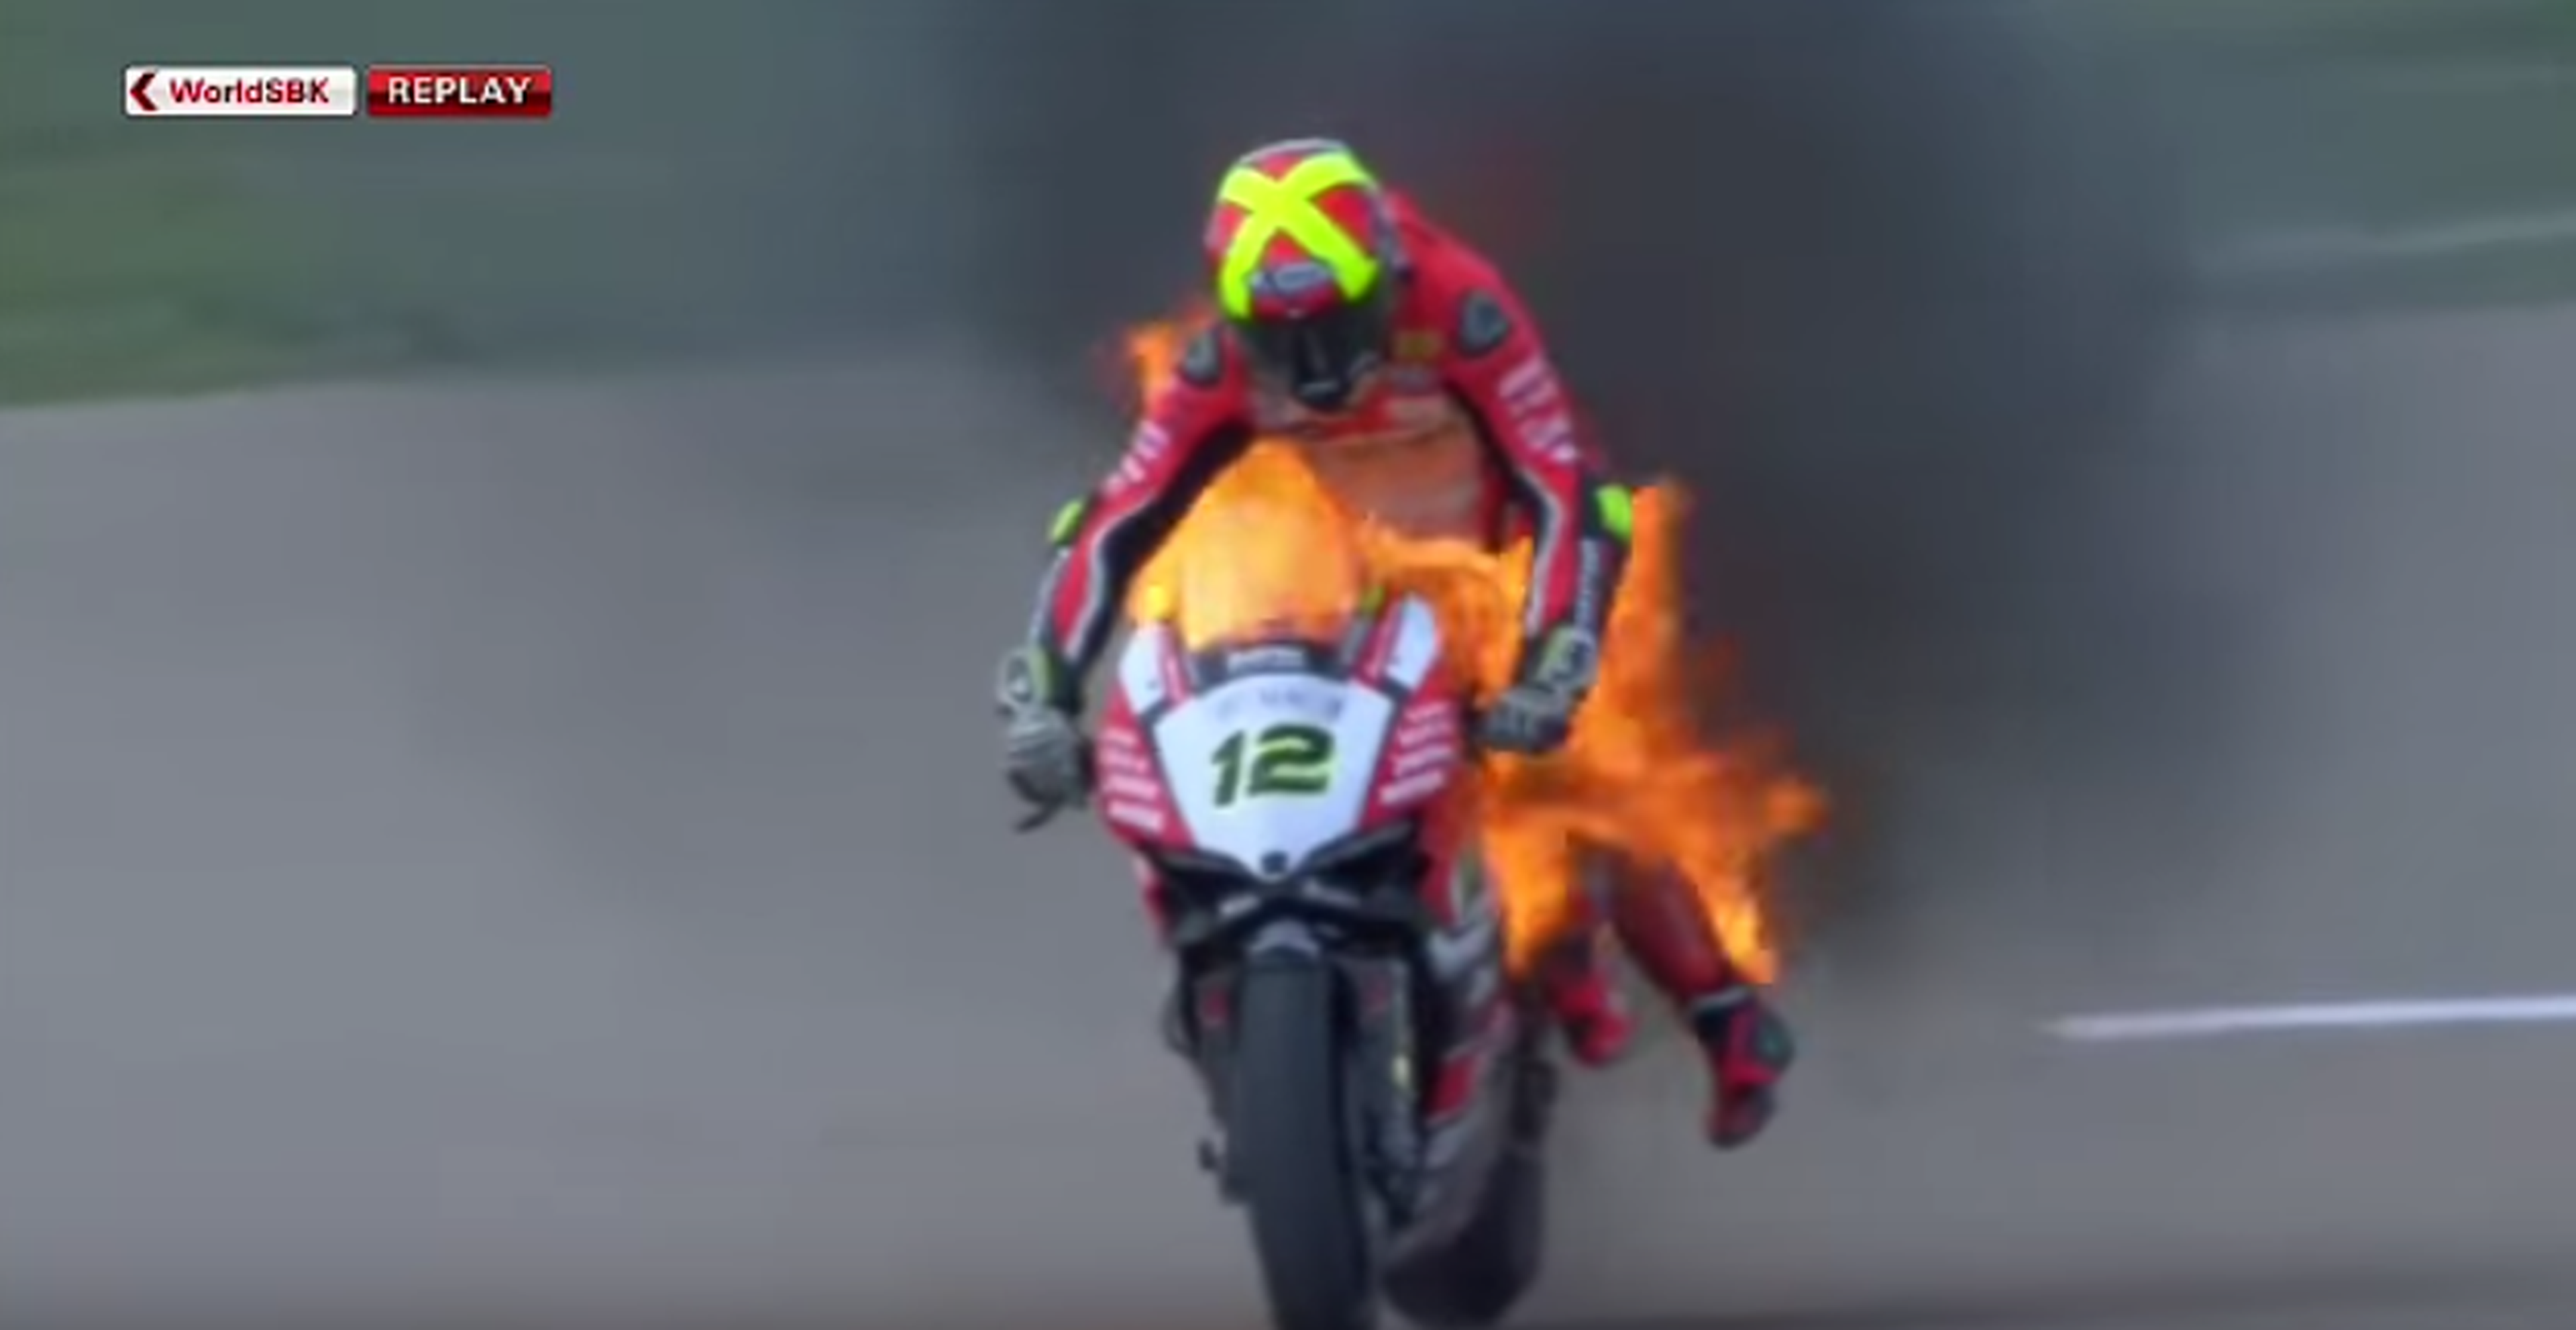 Vídeo: ¡Xavi Forés y su moto se incendian en plena carrera!